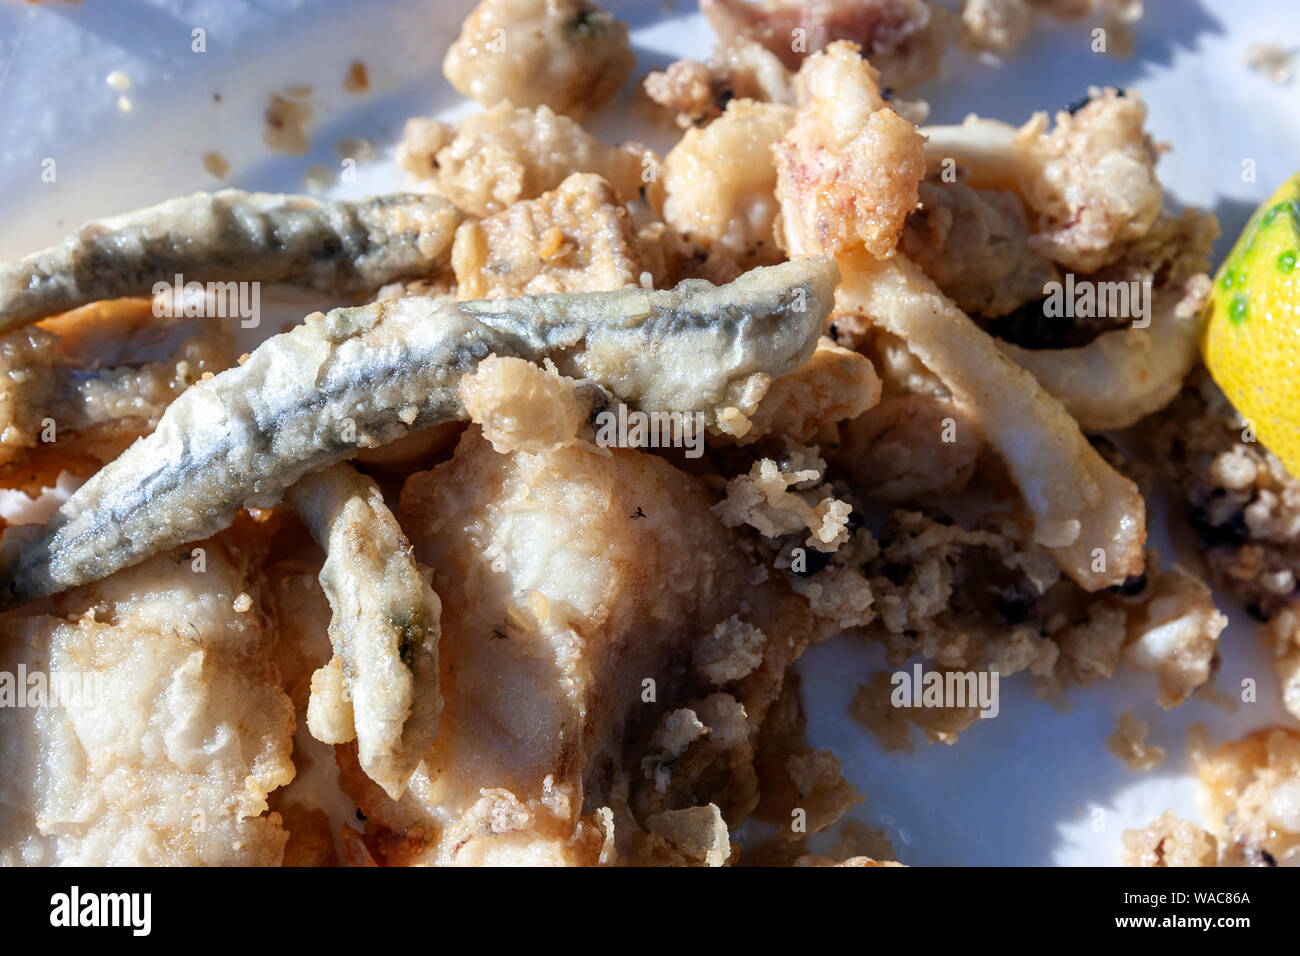 Pescadito frito, fried fish, dish in  in Pedregalejo, Malaga, Andalucia, Spain Stock Photo